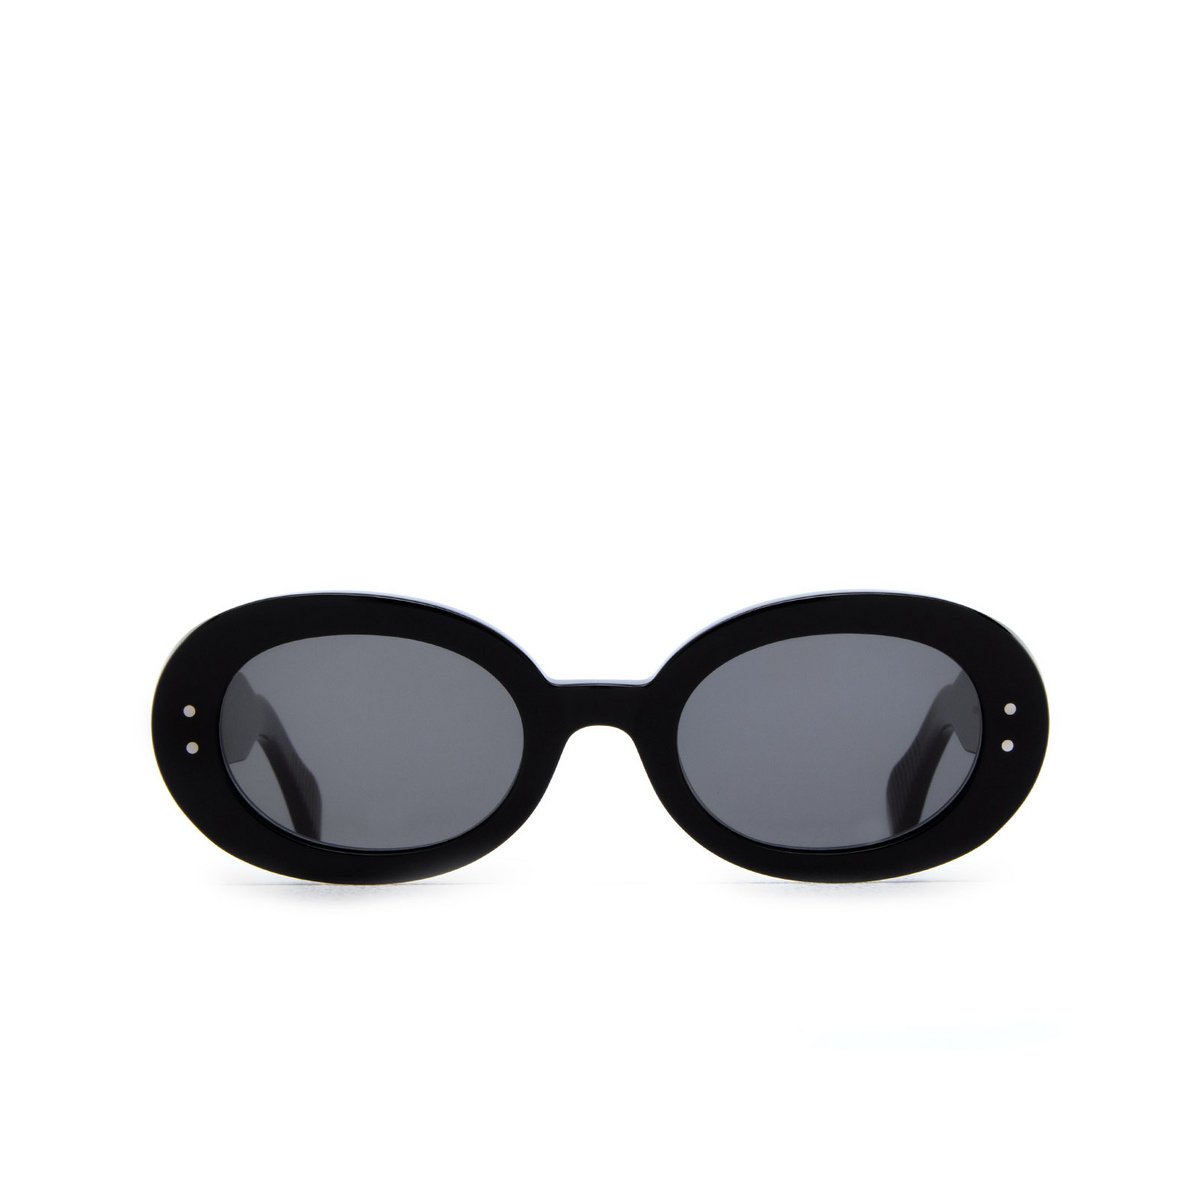 Cubitts GOLDINGTON Sunglasses GOL-R-BLA Black - front view